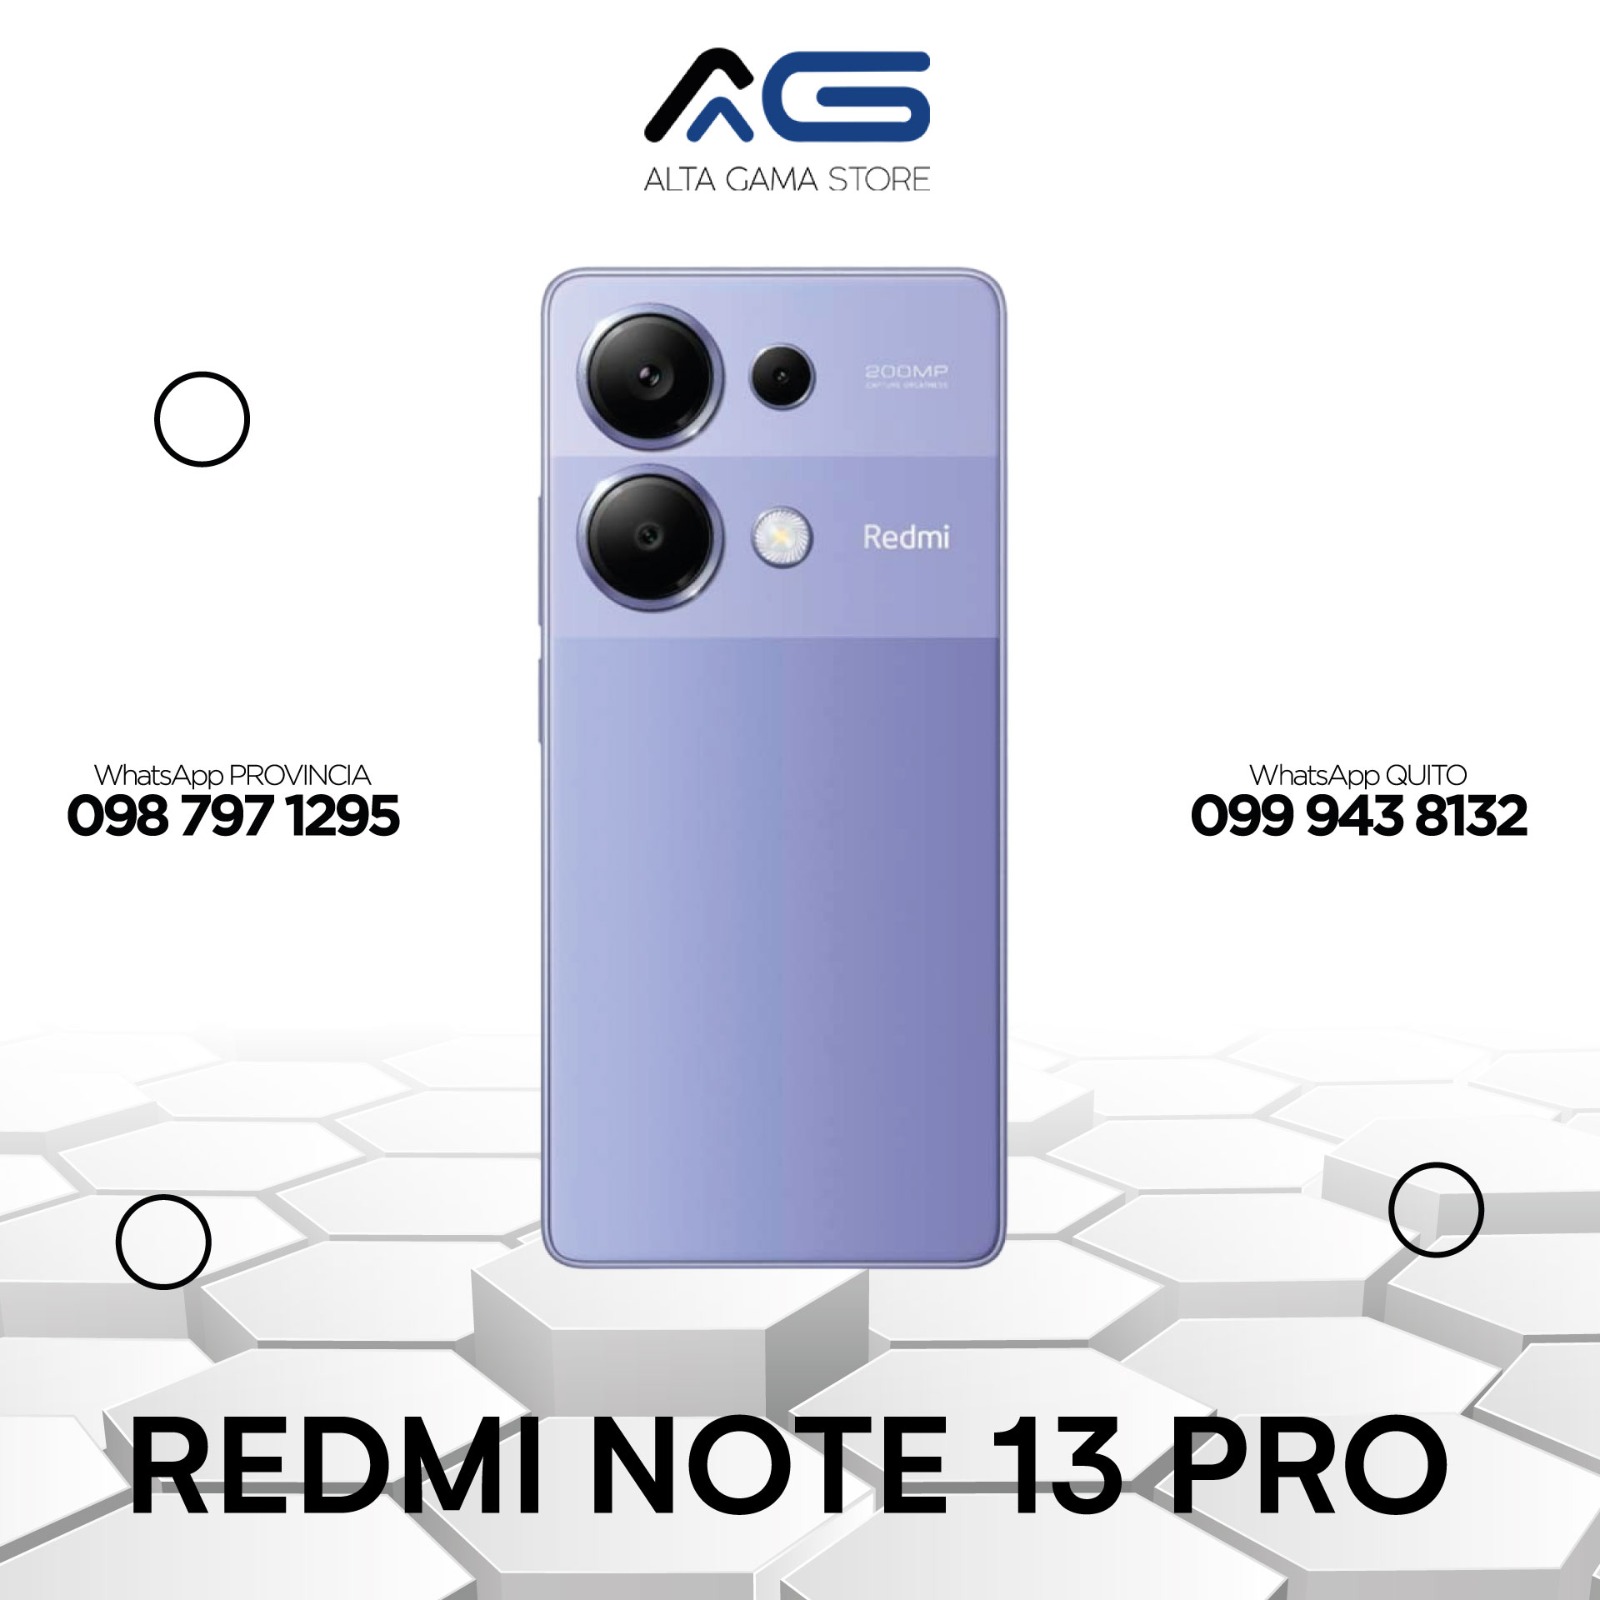 Redmi Note 13 PRO 256GB/8GB – Alta gama